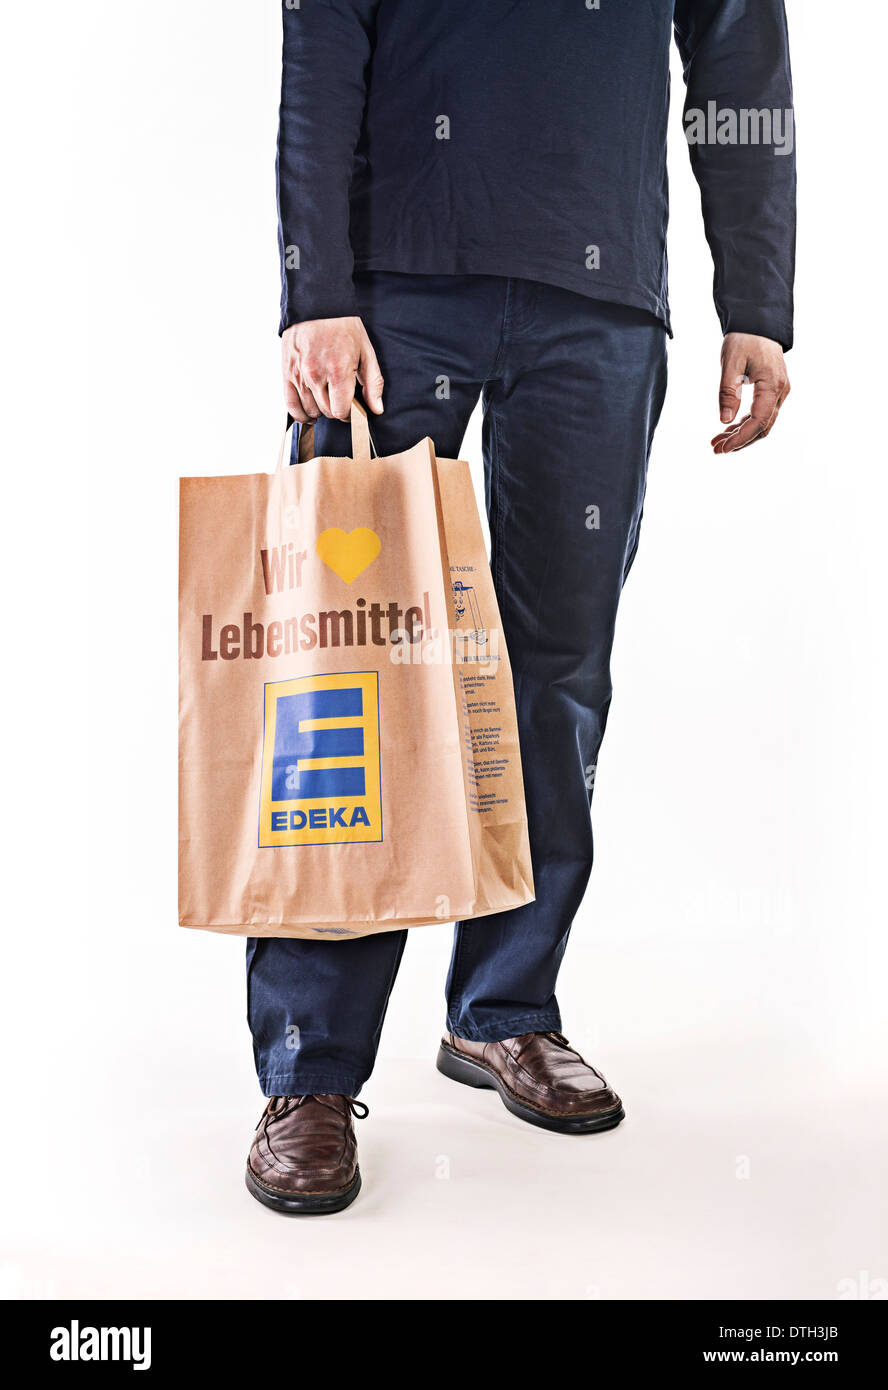 La parte inferiore del corpo di un uomo che indossa un sacchetto di carta della catena alimentare LA EDEKA. Foto Stock